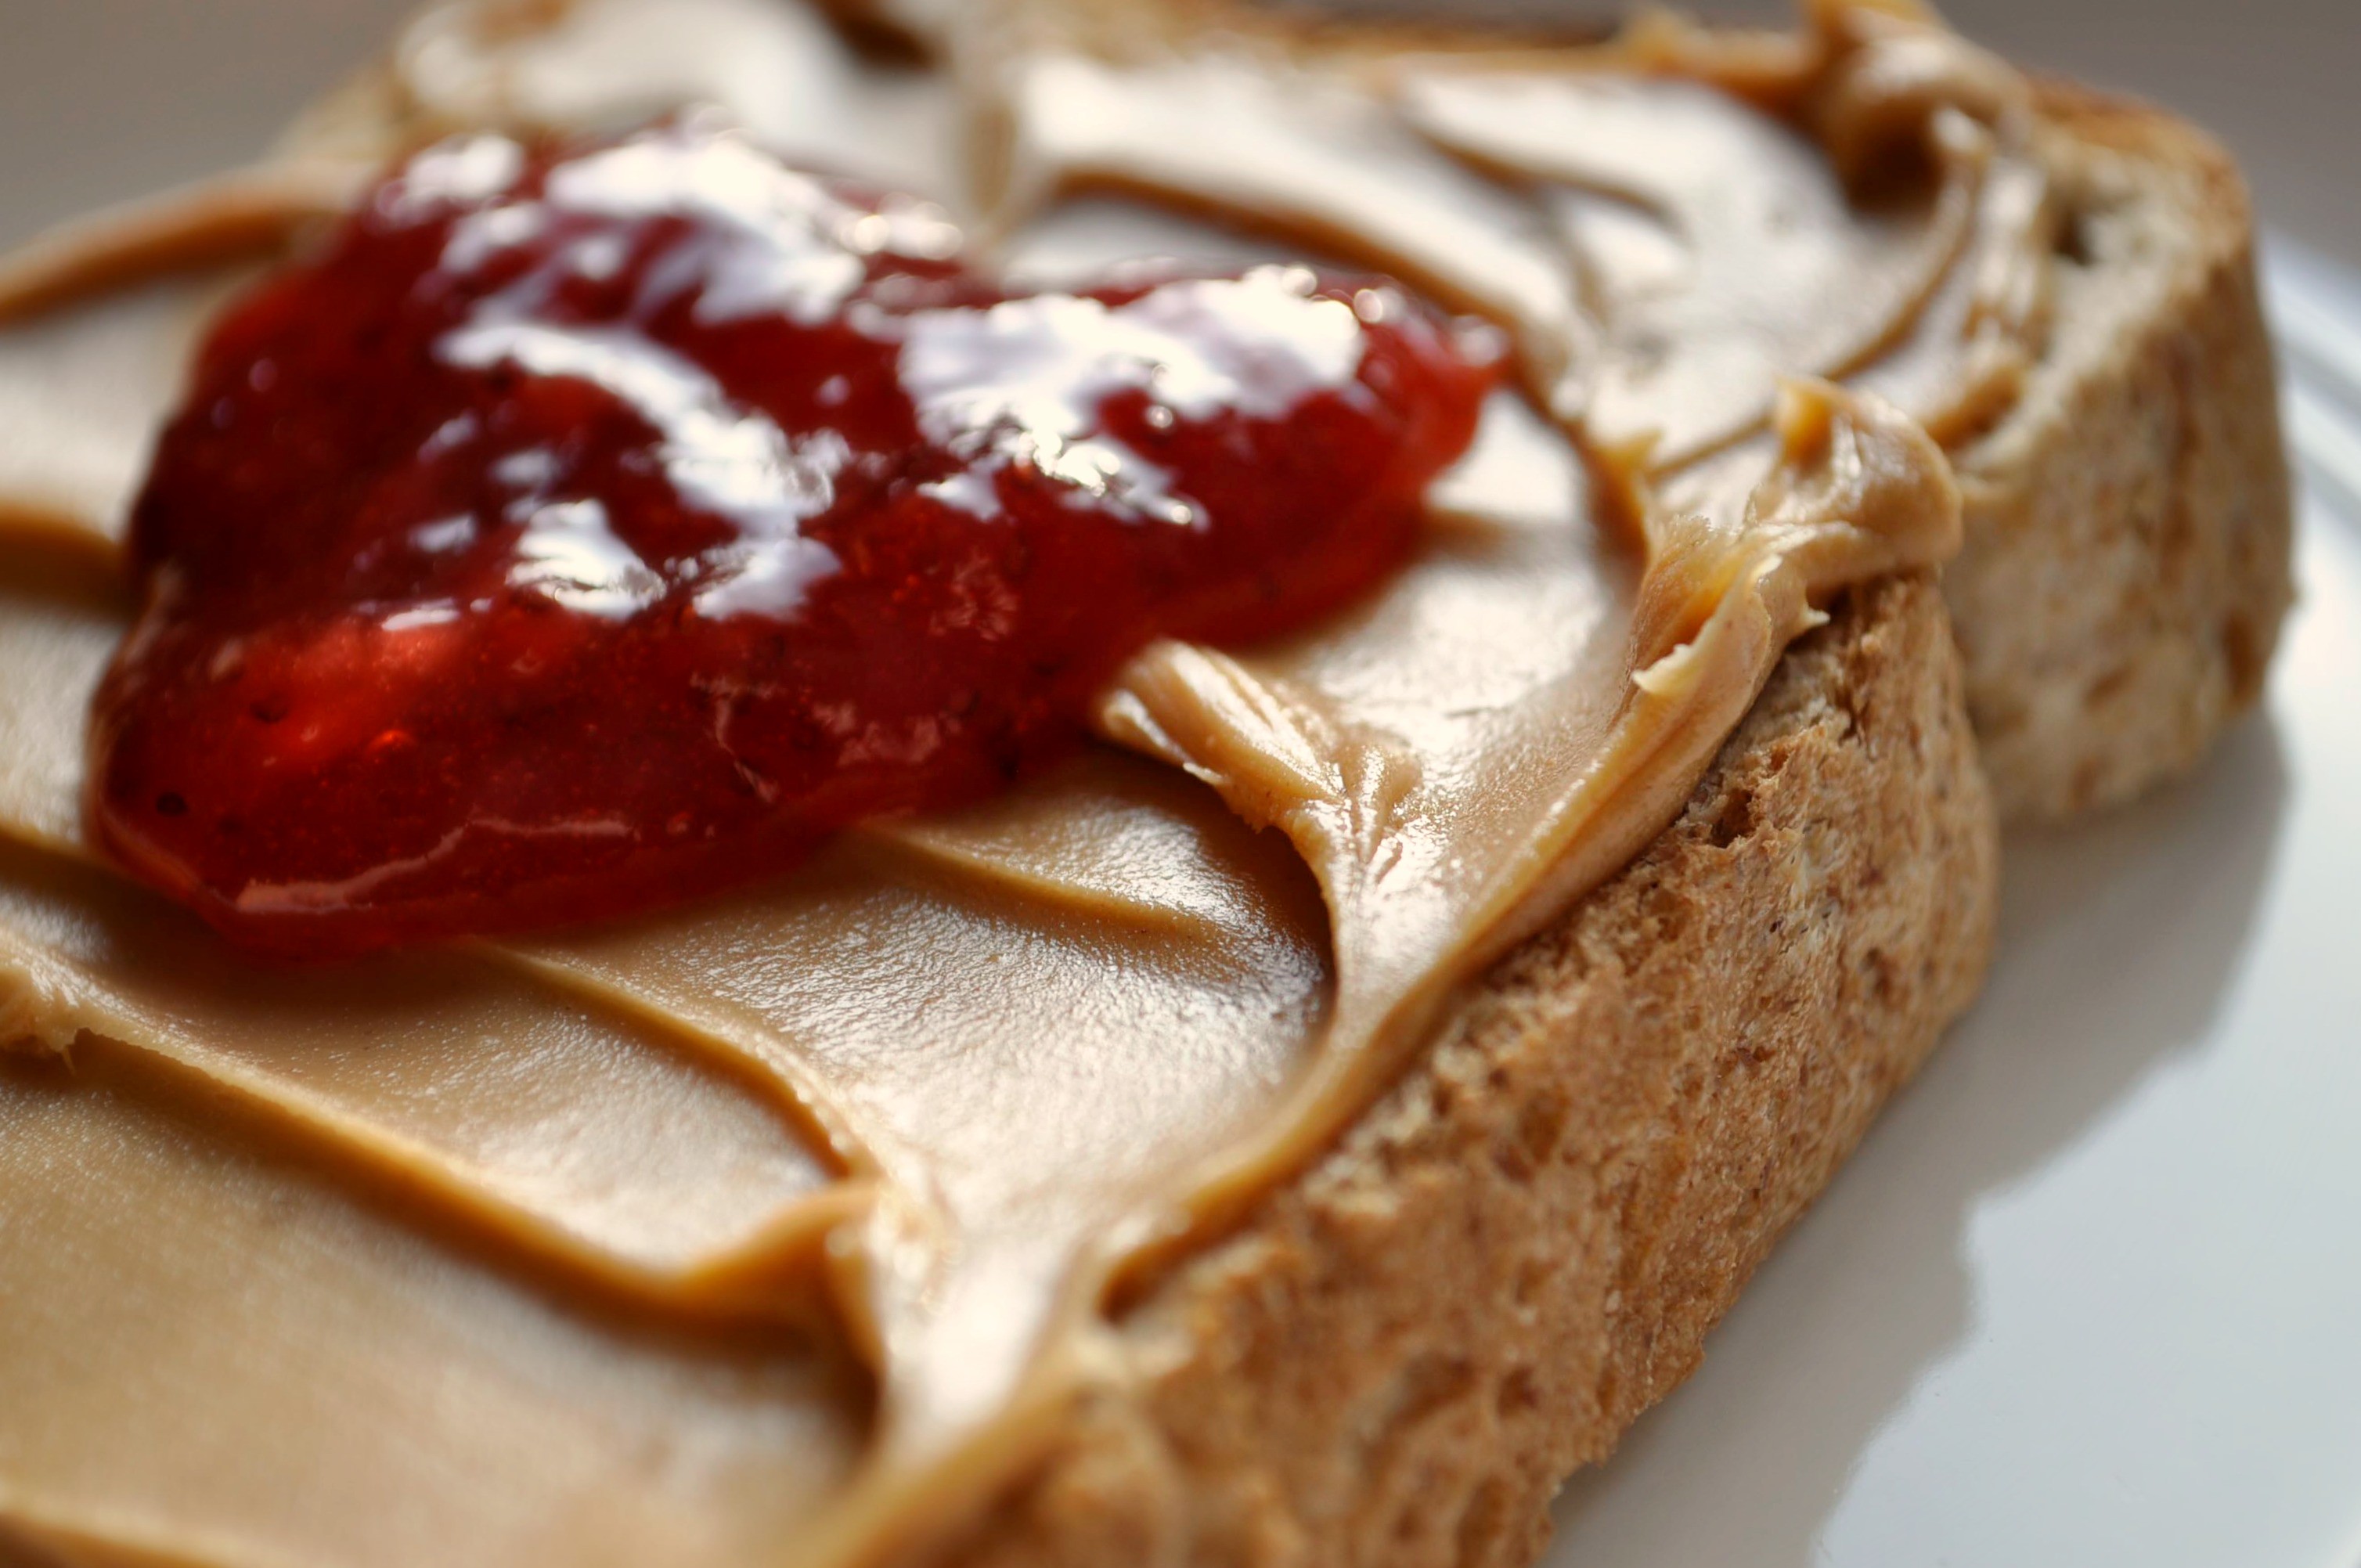 Creamy peanut butter and strawberry jam by * M i c h e l l e *